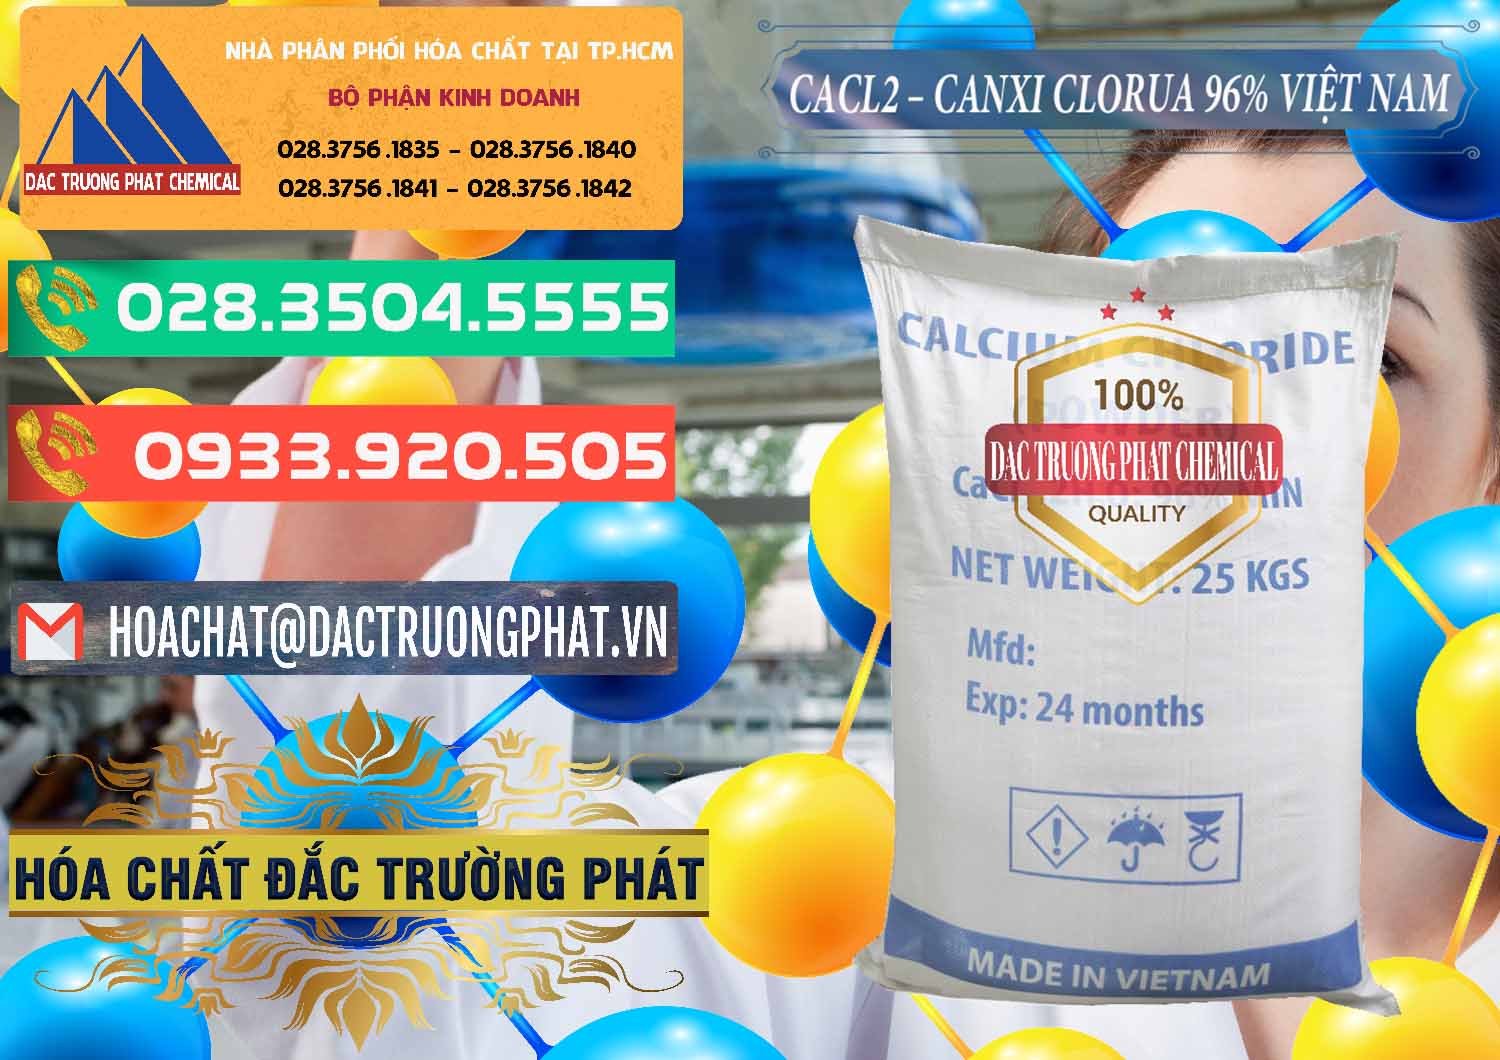 Đơn vị chuyên phân phối & bán CaCl2 – Canxi Clorua 96% Việt Nam - 0236 - Chuyên phân phối _ bán hóa chất tại TP.HCM - congtyhoachat.com.vn